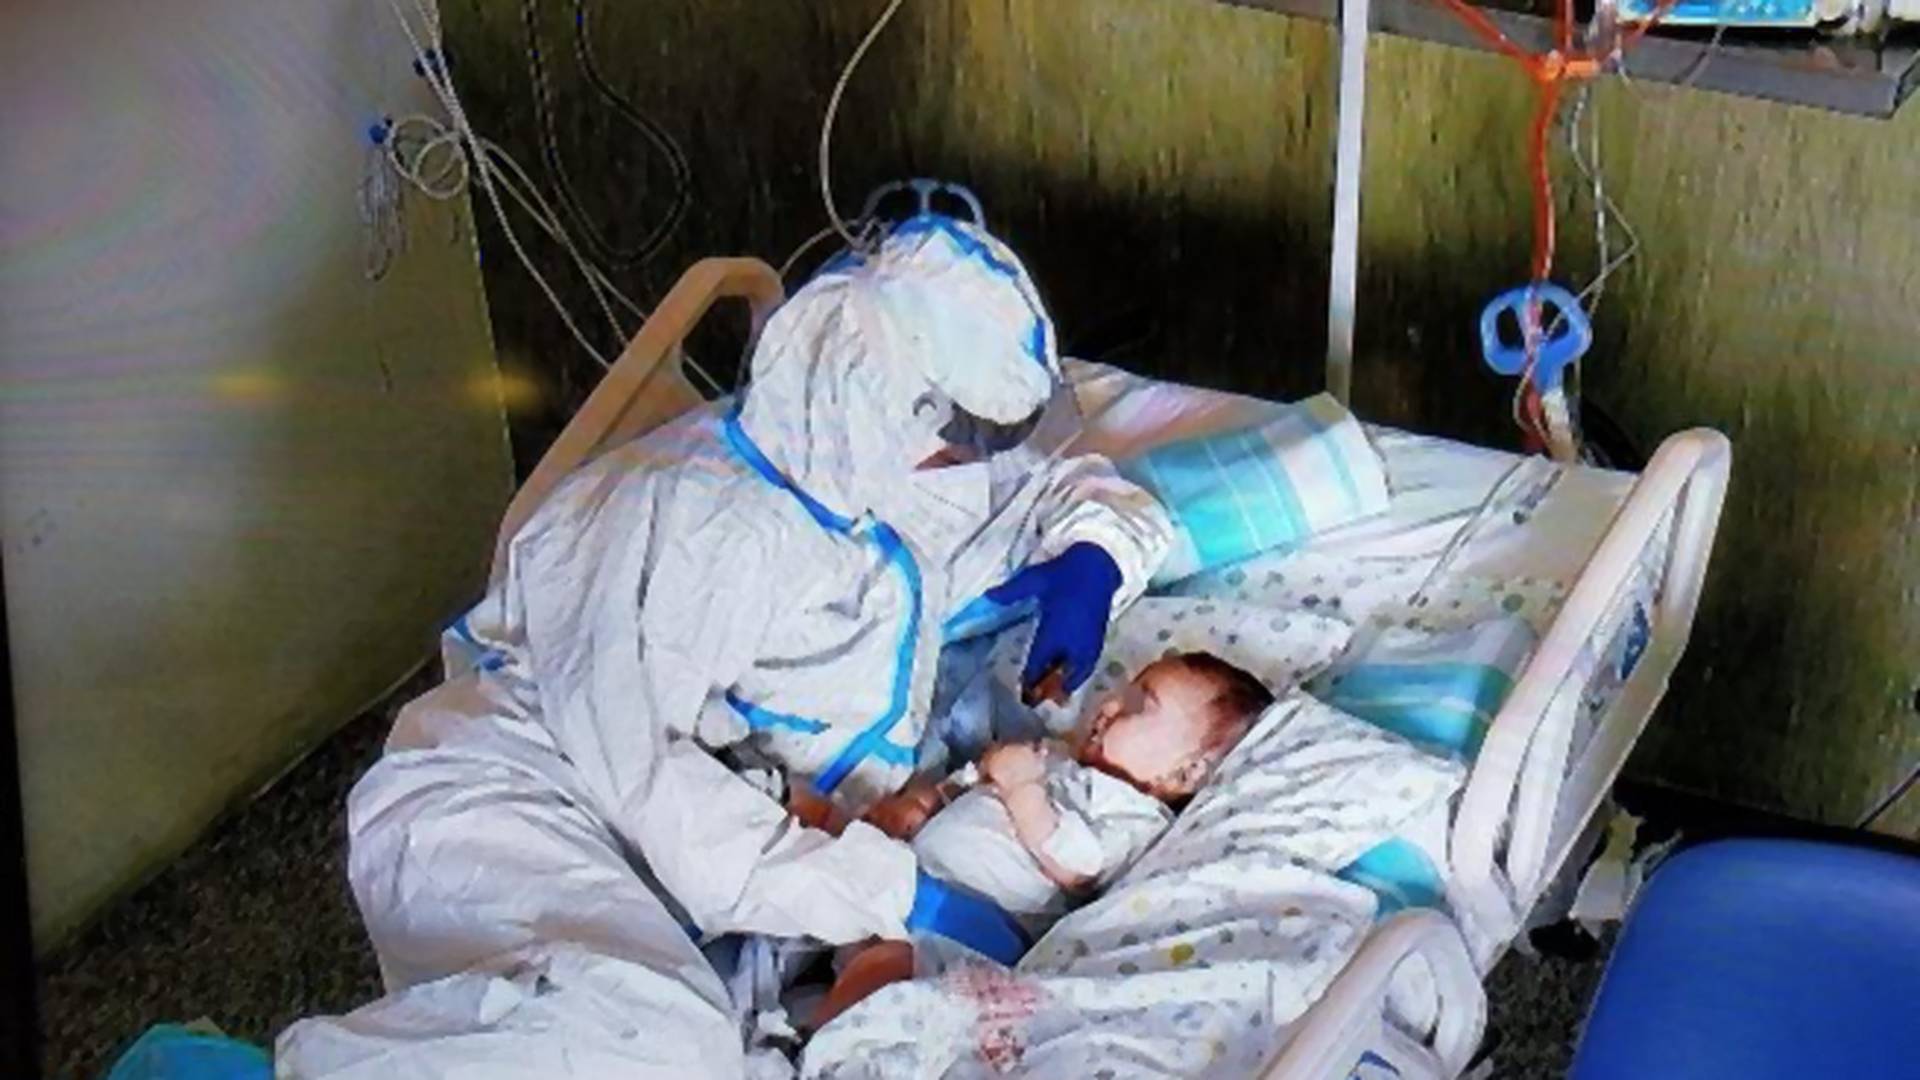 Pielęgniarka przytula dziecko. Chwytające za serce zdjęcie stało się hitem sieci